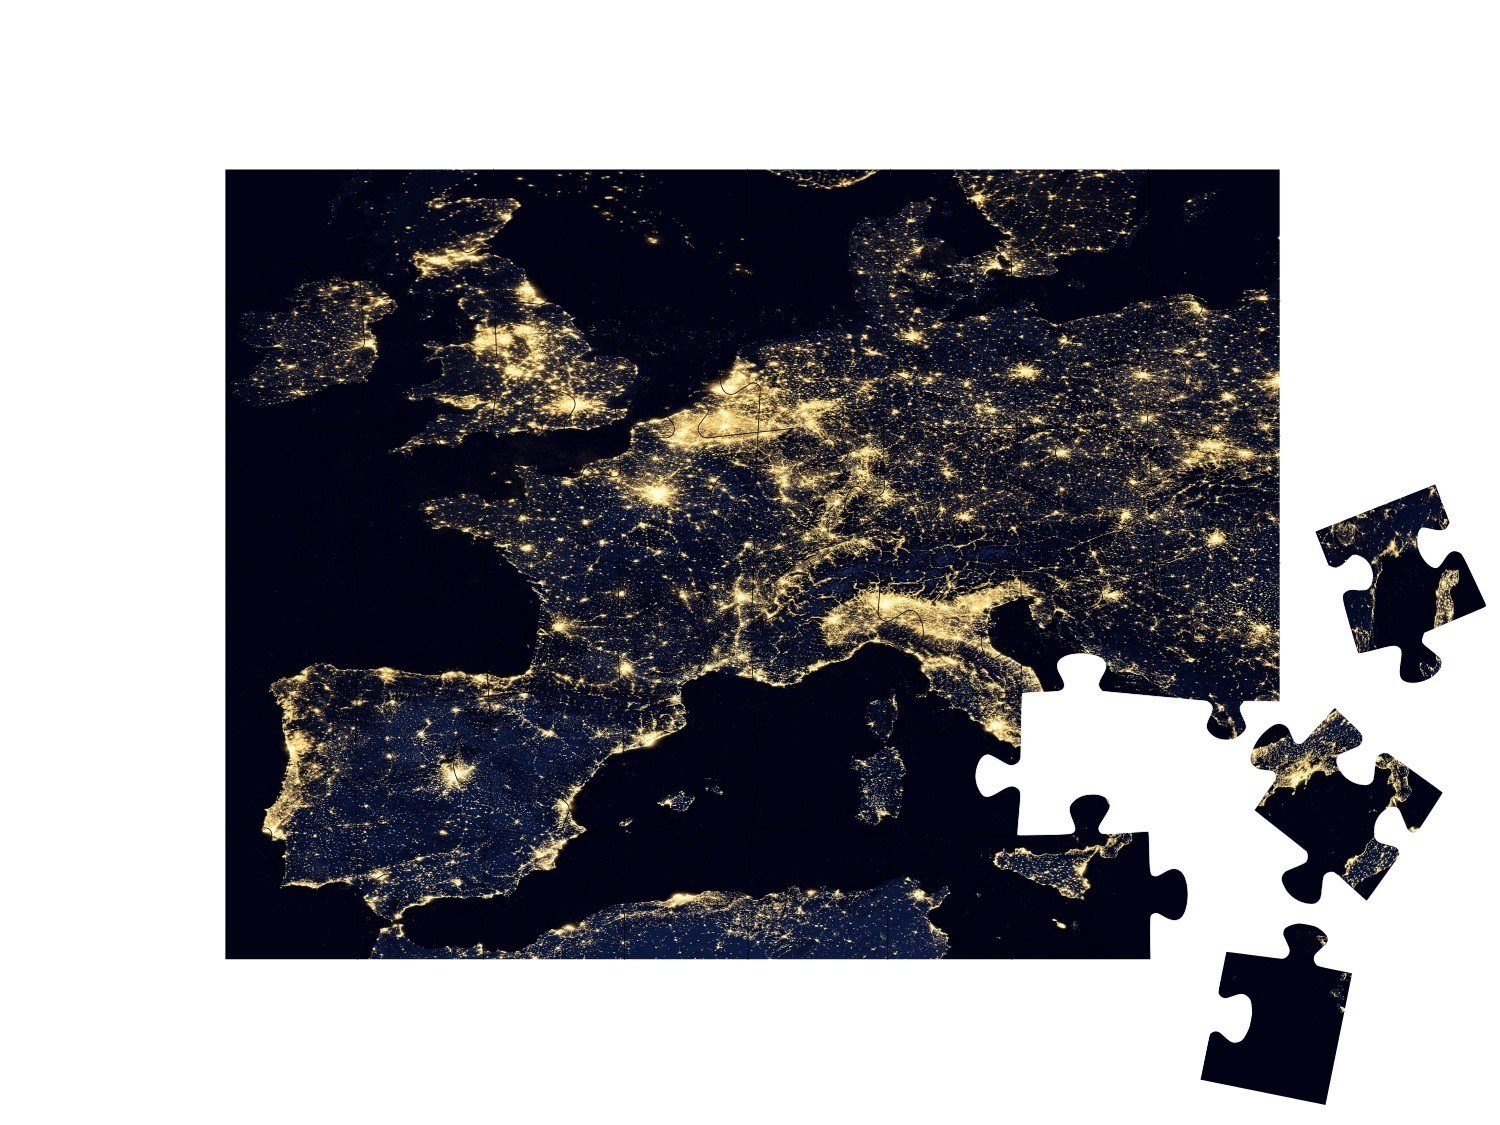 puzzleYOU Puzzle Lichter der Stadt Puzzleteile, Weltkarte, Teile Schwierig, Teile, der auf NASA, Weltraum, Europa, 100 48 puzzleYOU-Kollektionen 48